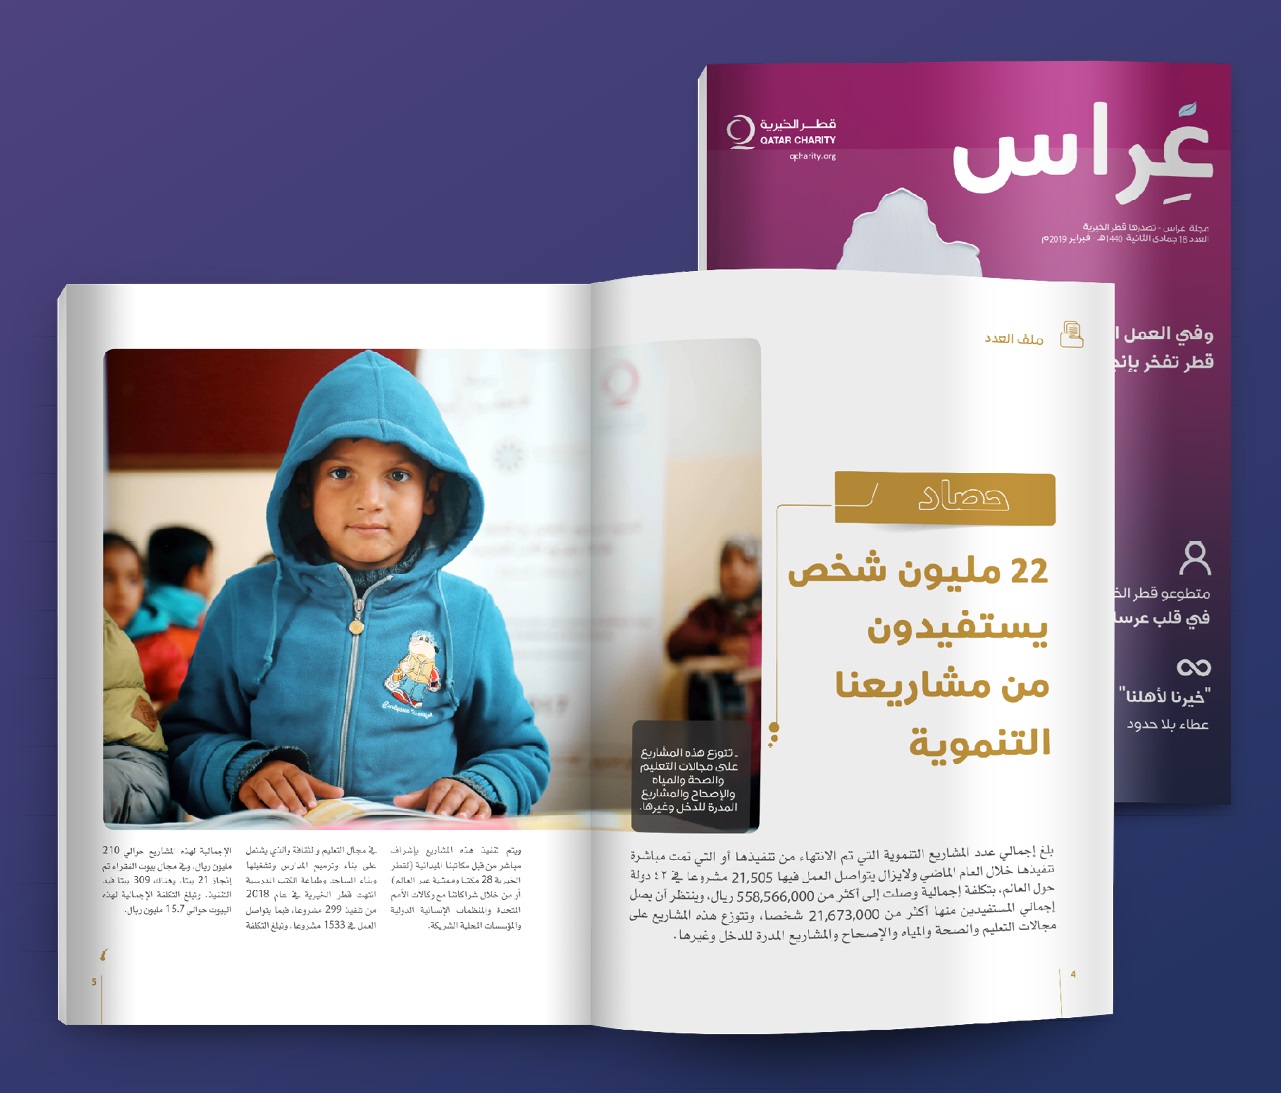 مجلة غراس عدد 18 : ترصد حصاد عامٍ كاملٍ من الإنجازات في العمل الإنساني لدولة قطر